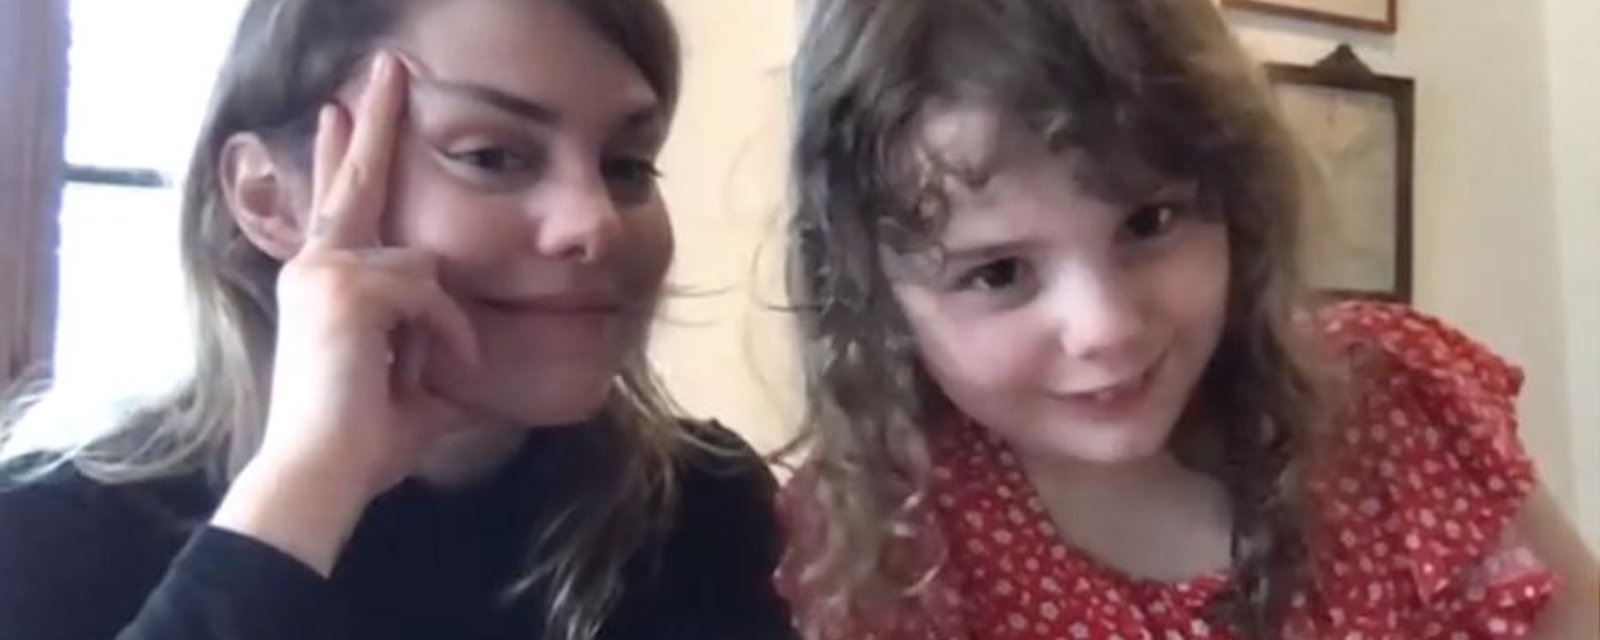 Coeur de pirate publie une nouvelle adorable vidéo avec sa fille Romy et on est sous le charme